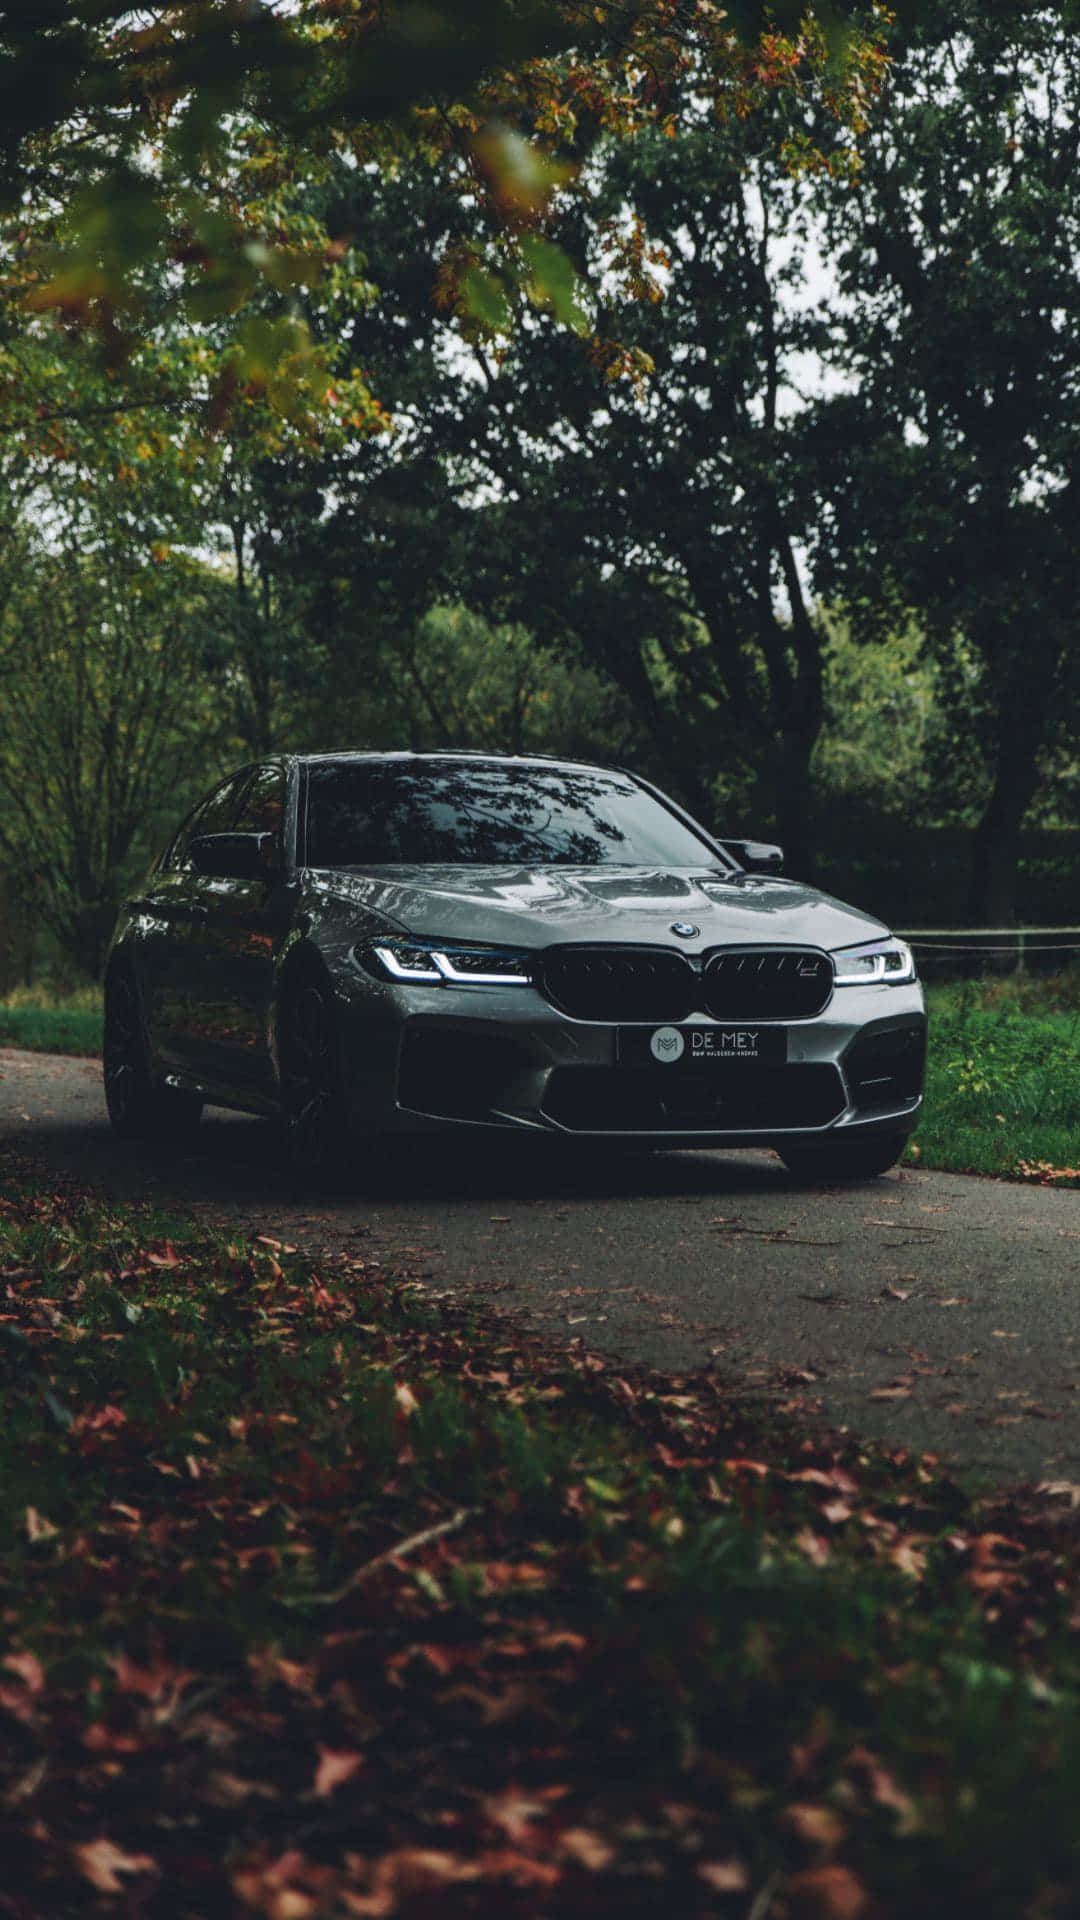 Pixel 3 BMW Background là sự kết hợp tuyệt vời giữa công nghệ và phong thái tinh tế. Màn hình nền này chắc chắn sẽ khiến bạn phải ngỡ ngàng vì độ sắc nét và chi tiết của từng chi tiết trên chiếc xe BMW đầy mạnh mẽ. Một trải nghiệm đích thực mà bạn không nên bỏ qua! 